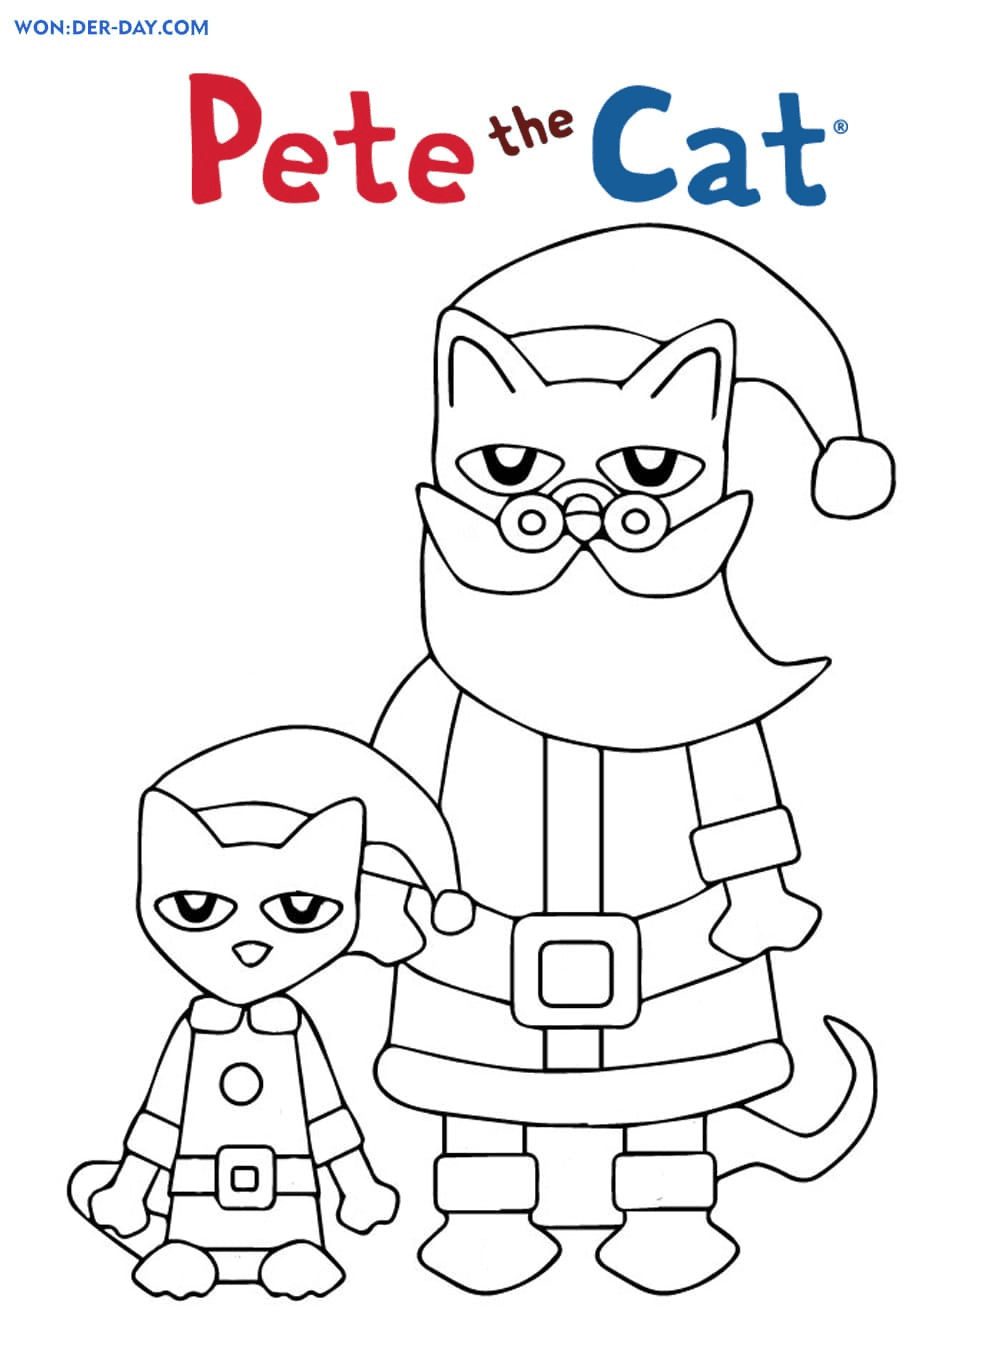 Кот Пит и Санта-Клаус из мультфильма «Кот Пит»